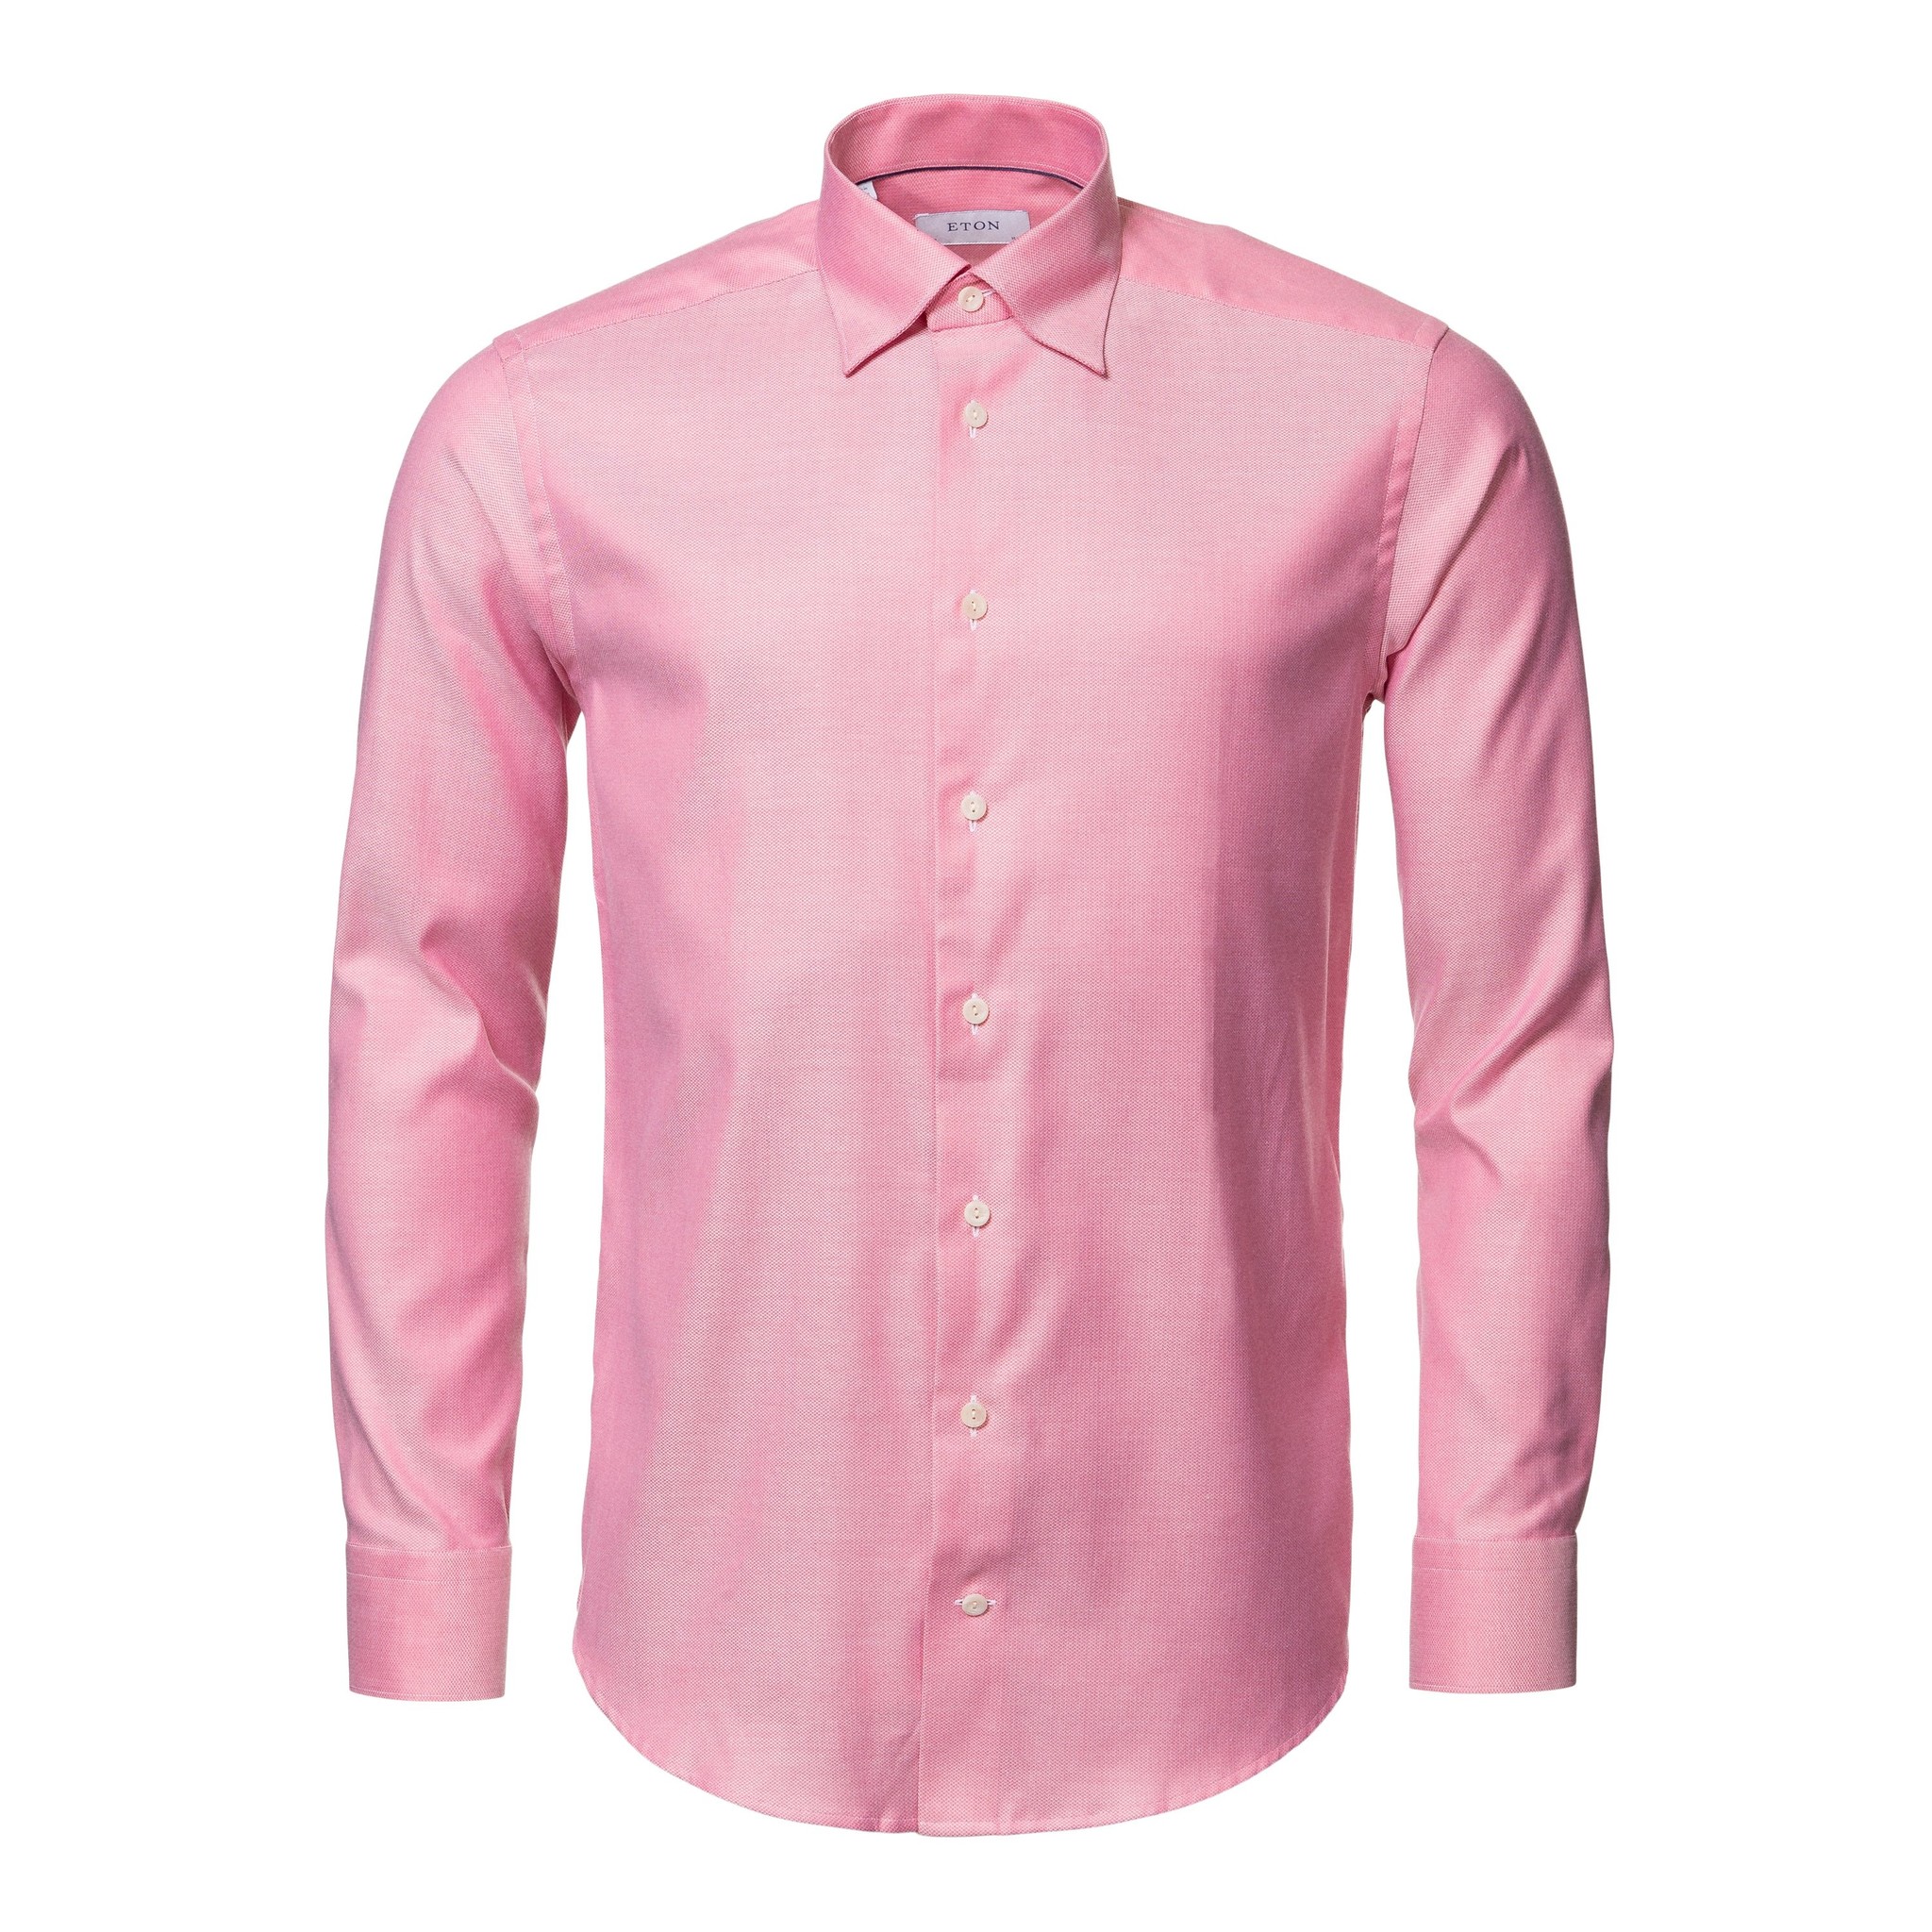 Eton Pink Stretch Tencel shirt with button under collar